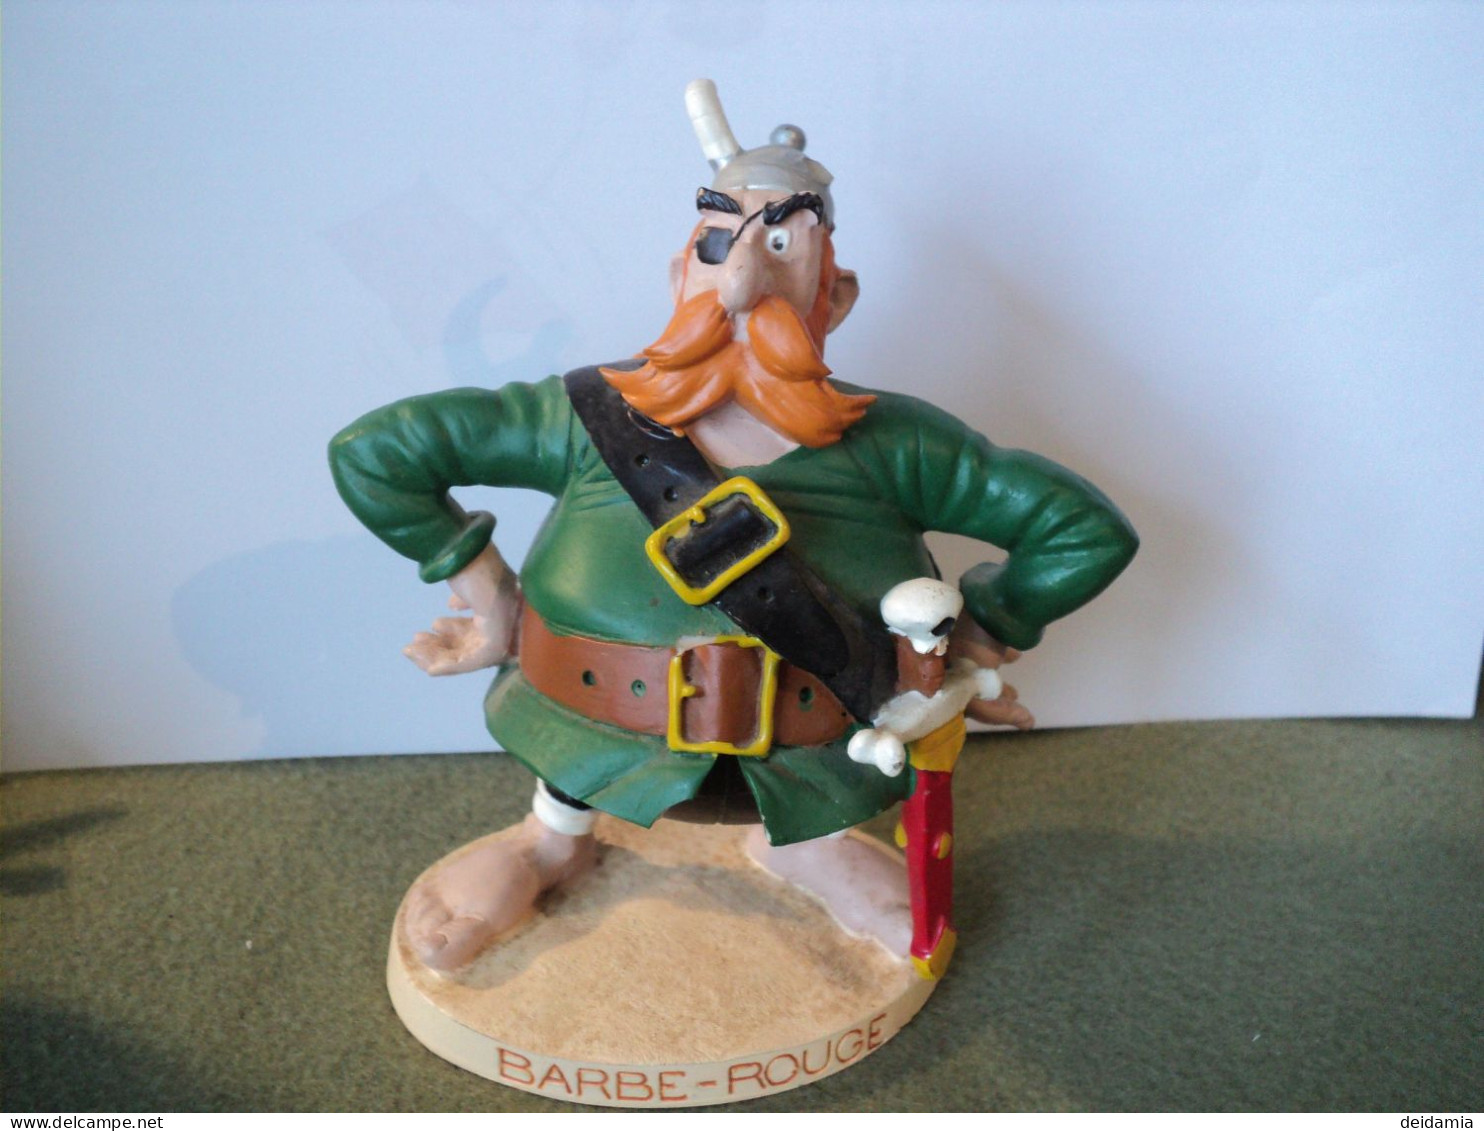 BARBE ROUGE. 2000. FIGURINE ASTERIX PLASTOY ALBERT RENE - Asterix & Obelix